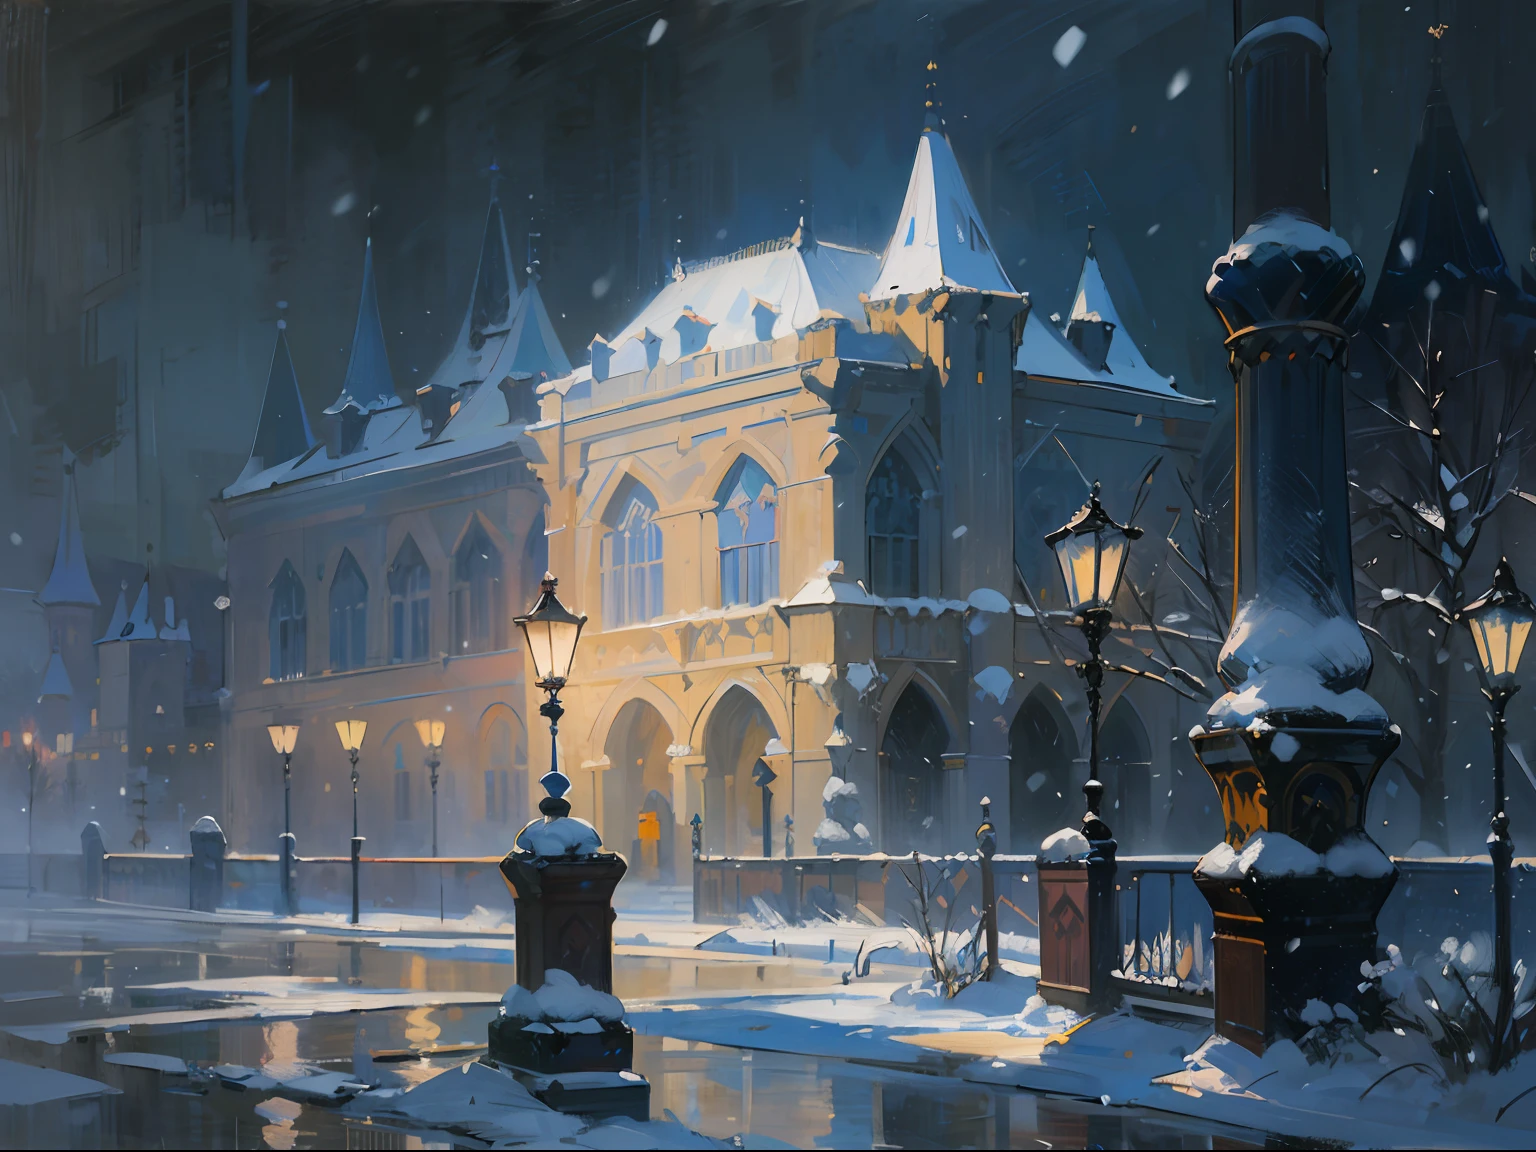 ((Palast)), ((Schloss)), Säulen, ((Nachtzeit)), Dunkelheit, Abend, Beleuchtung, ((Russland)), ((19. Jahrhundert)), es schneit, winter, (Renoir), (viele), (Ölgemälde), (skizzieren)